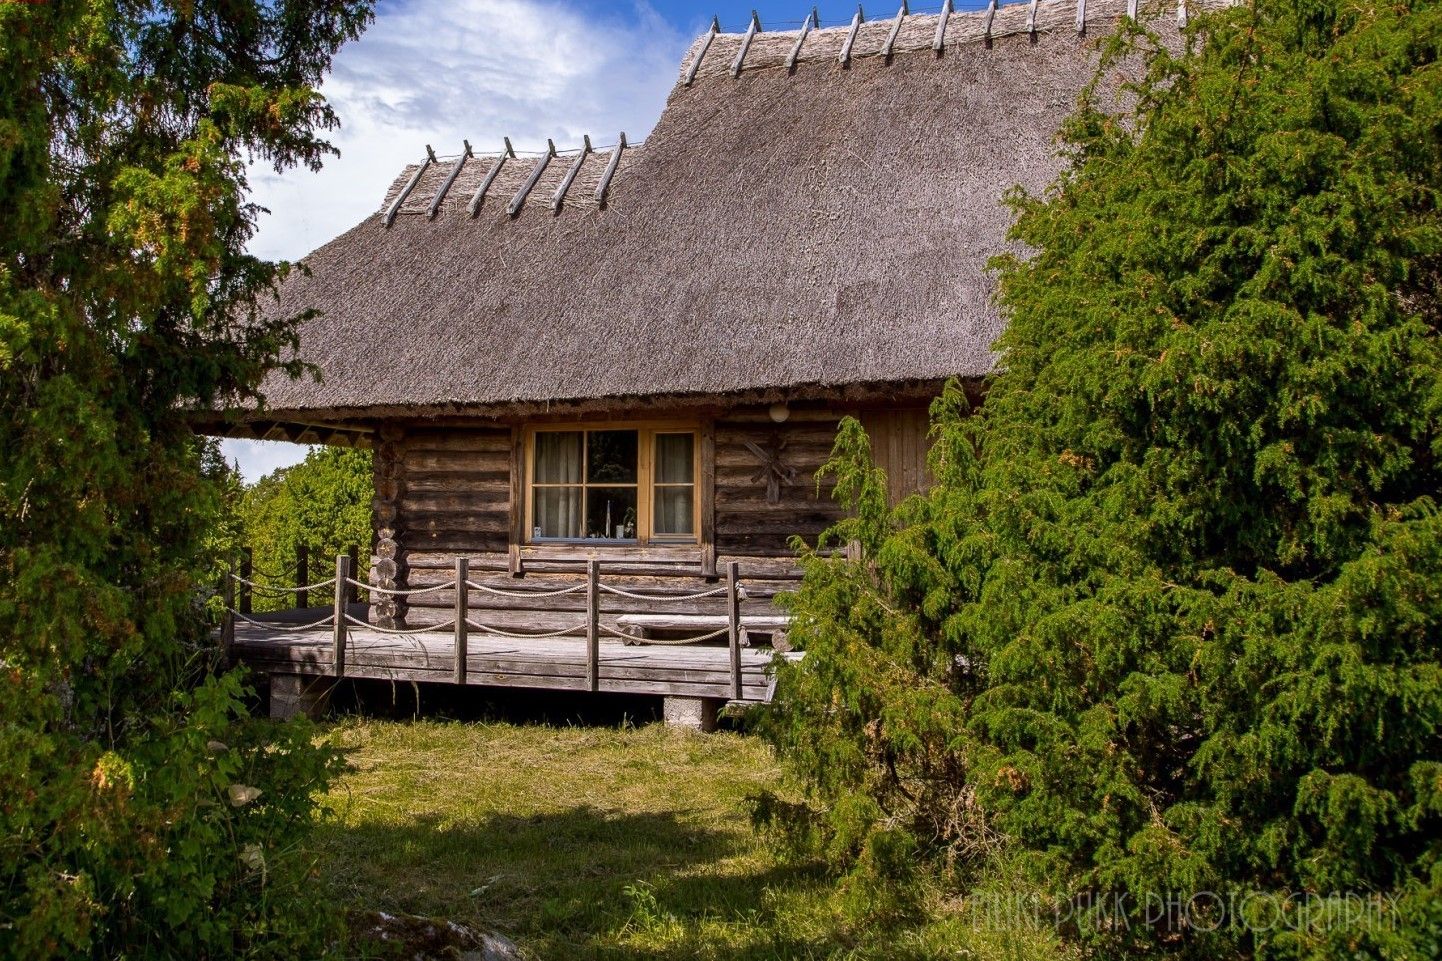 Pärnumaal Lääneranna vallas Saulepi külas Kõrksaarel müügis olev 2003. aastal valminud palkmaja ja 24,2 hektari
suurune kinnistu on müügis 299 000 euro eest.
Privaatsus on
tagatud.